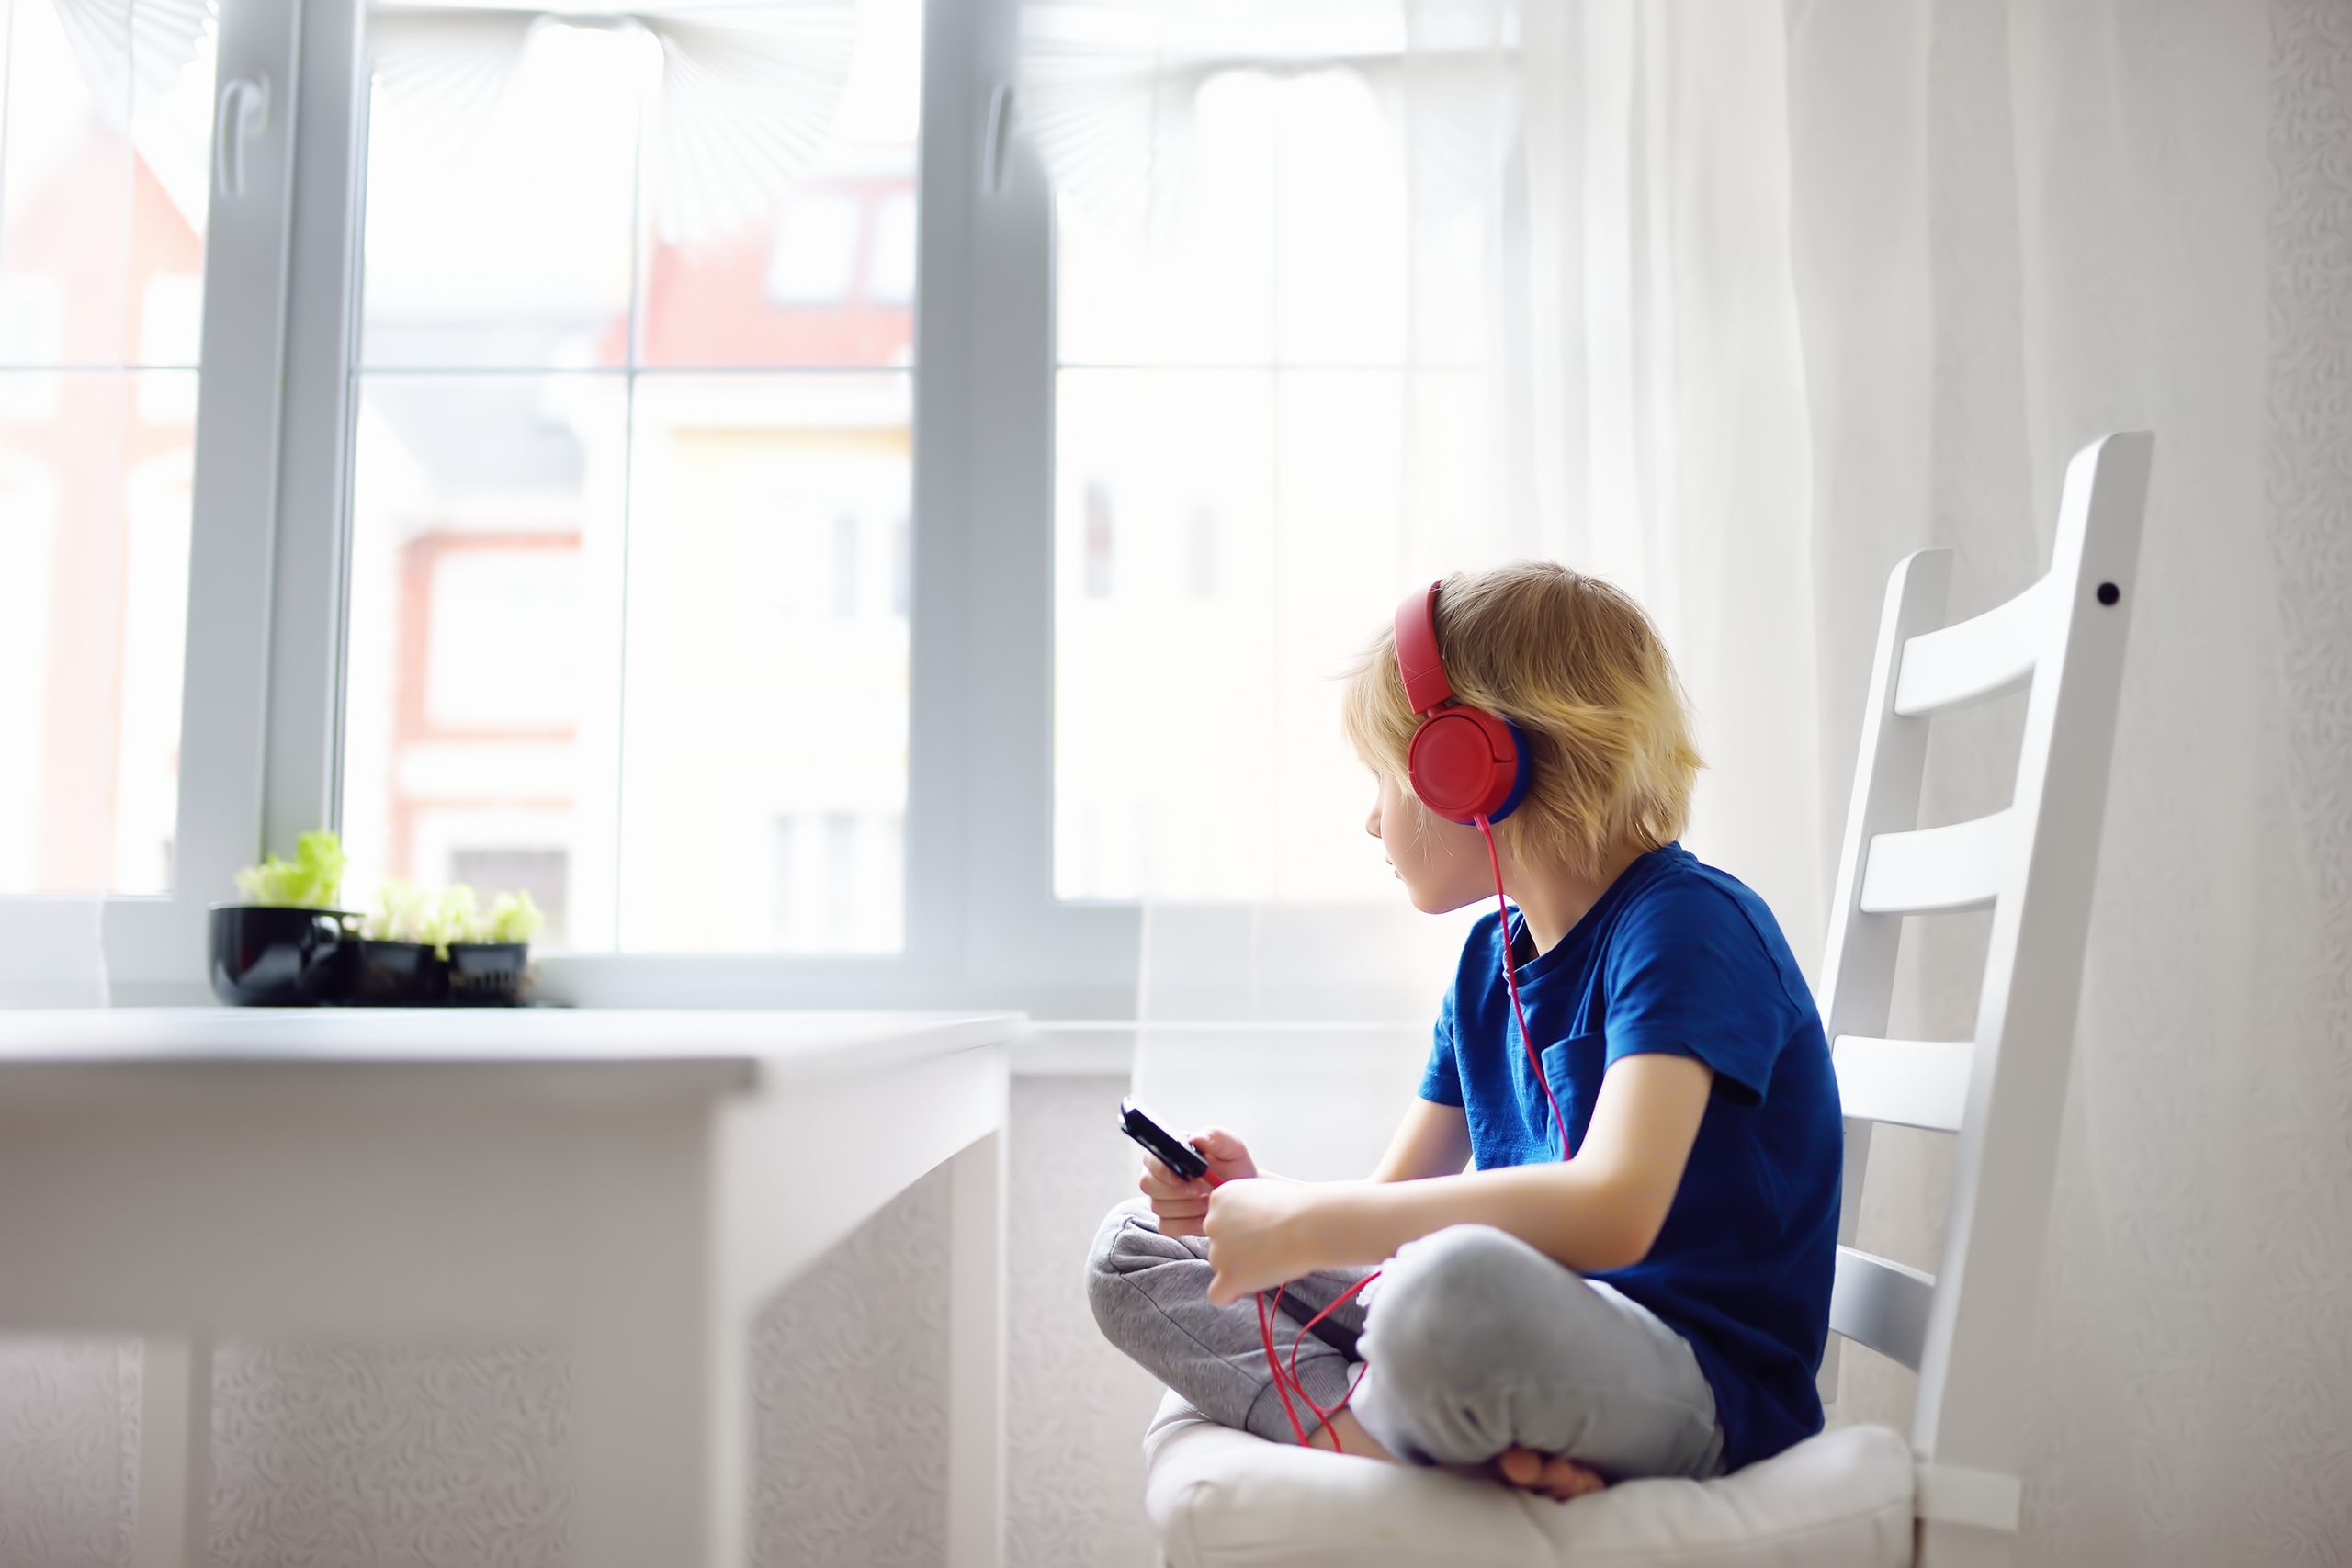 Preschooler Child Enjoy Listen Music Or Audiobook Using His Headphones At Home.